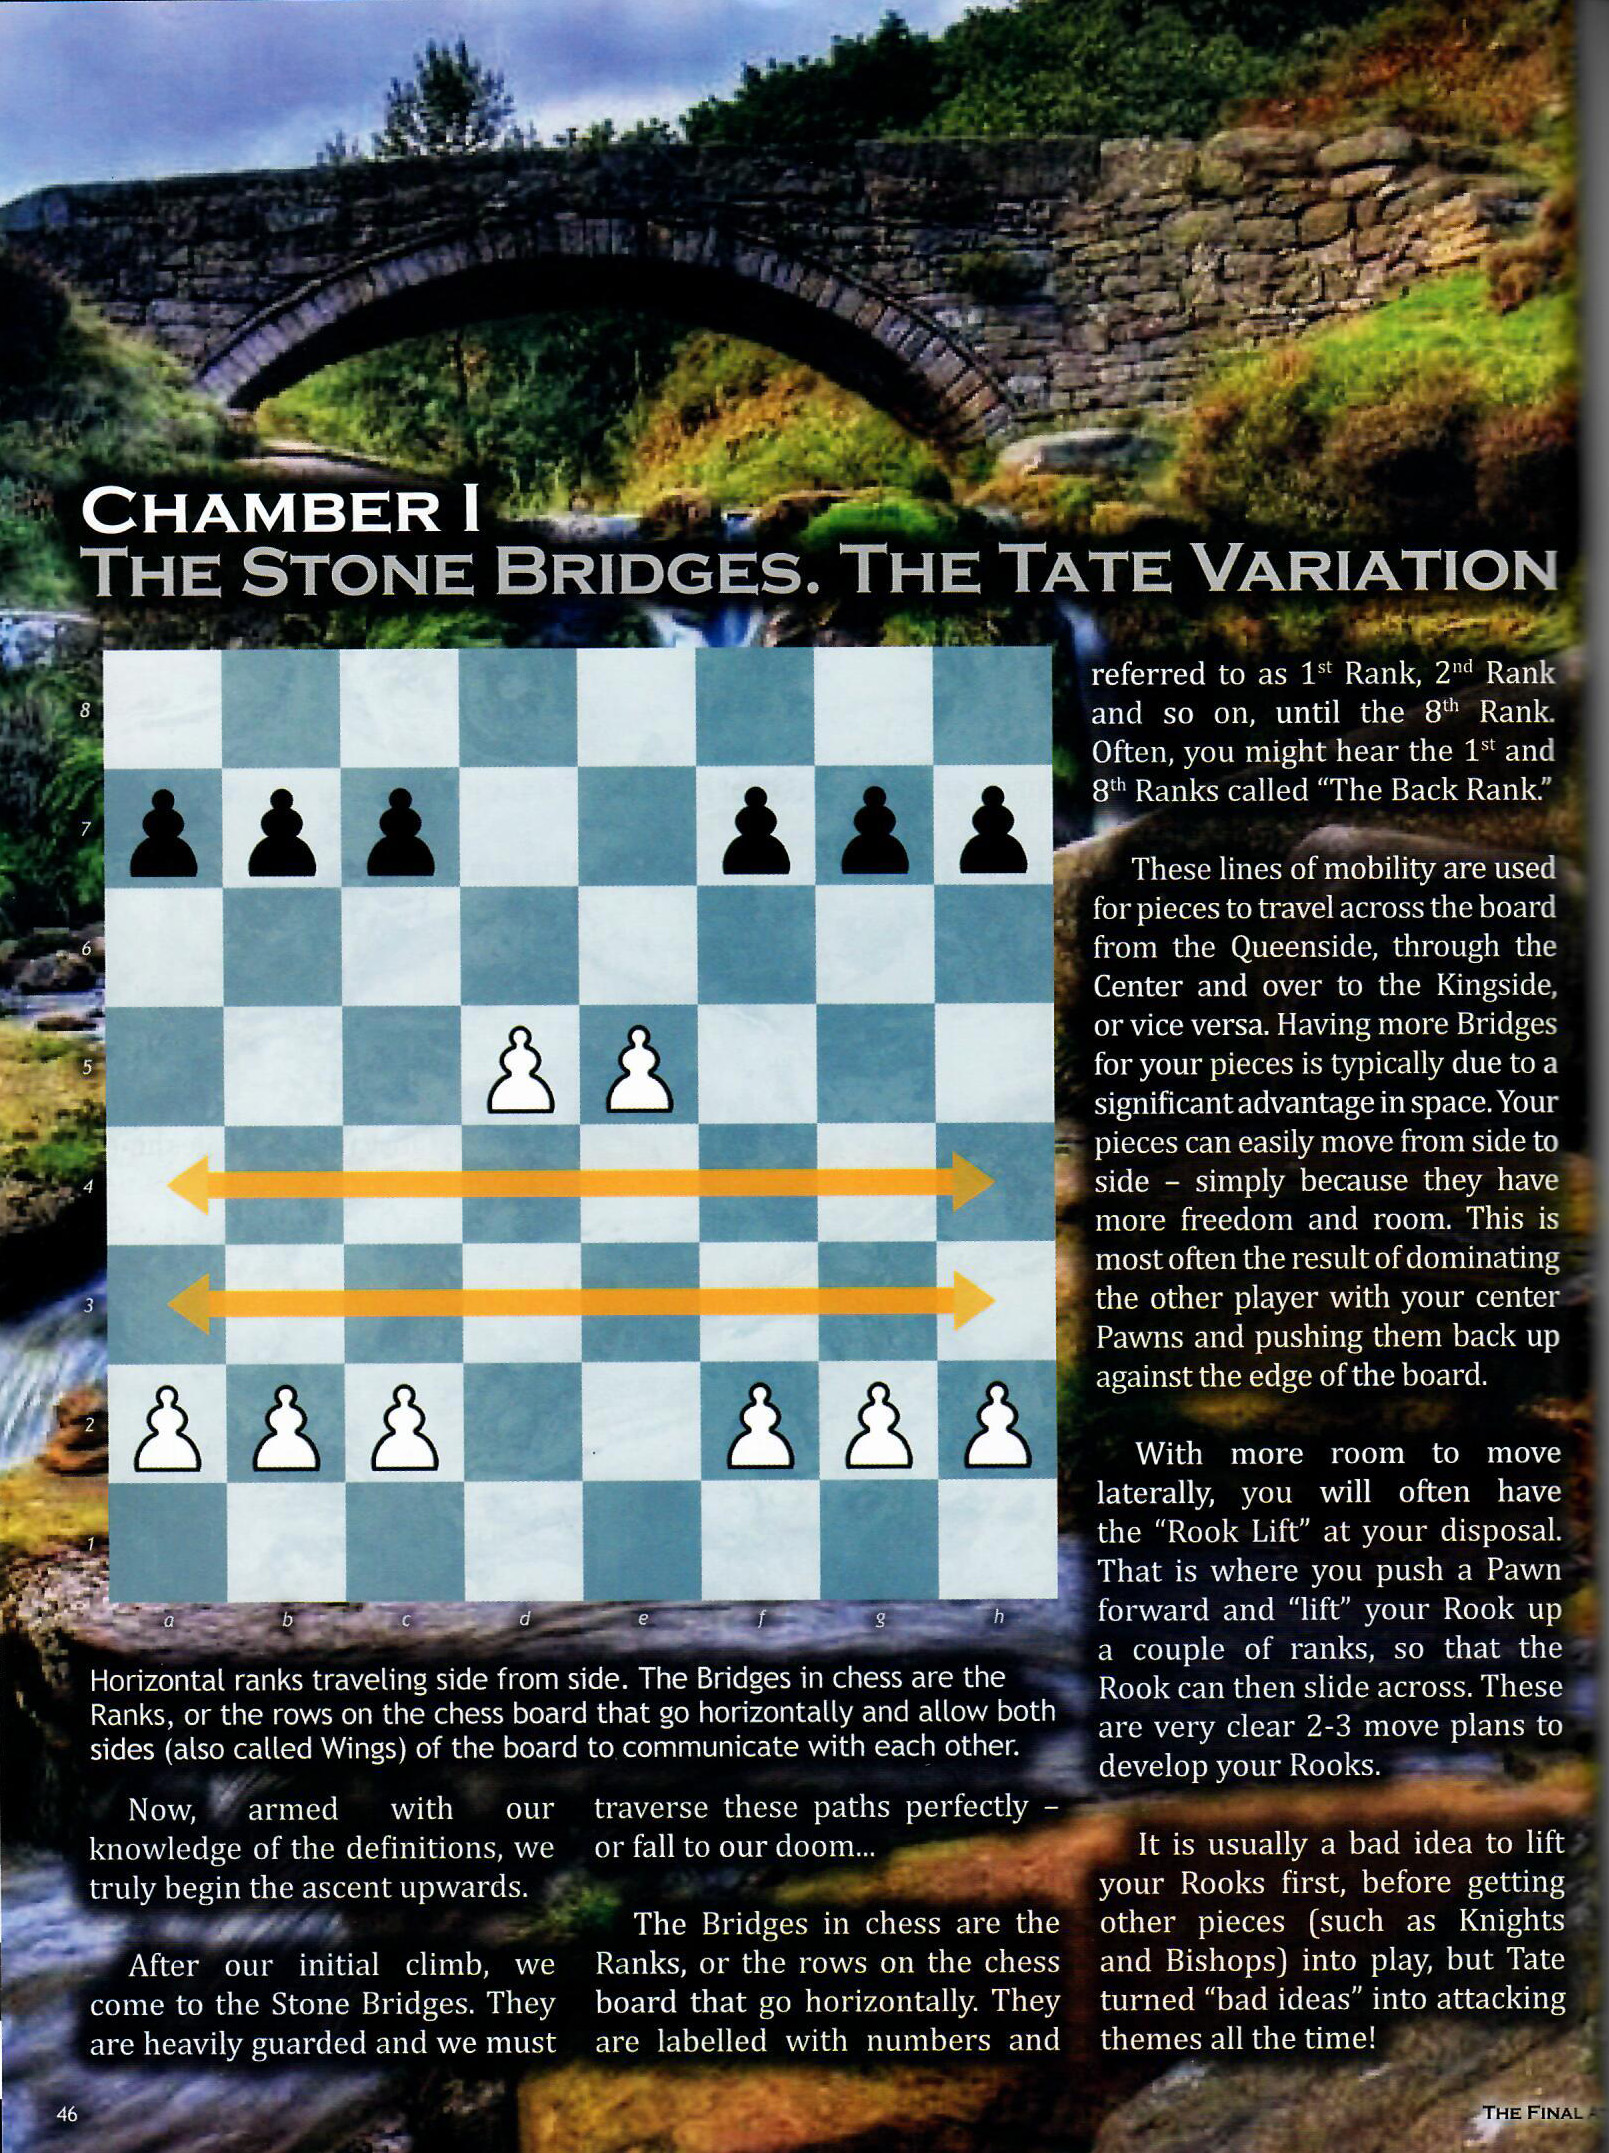 IM Emory Tate wins 1st Pathena Open Chess Tournament – Press